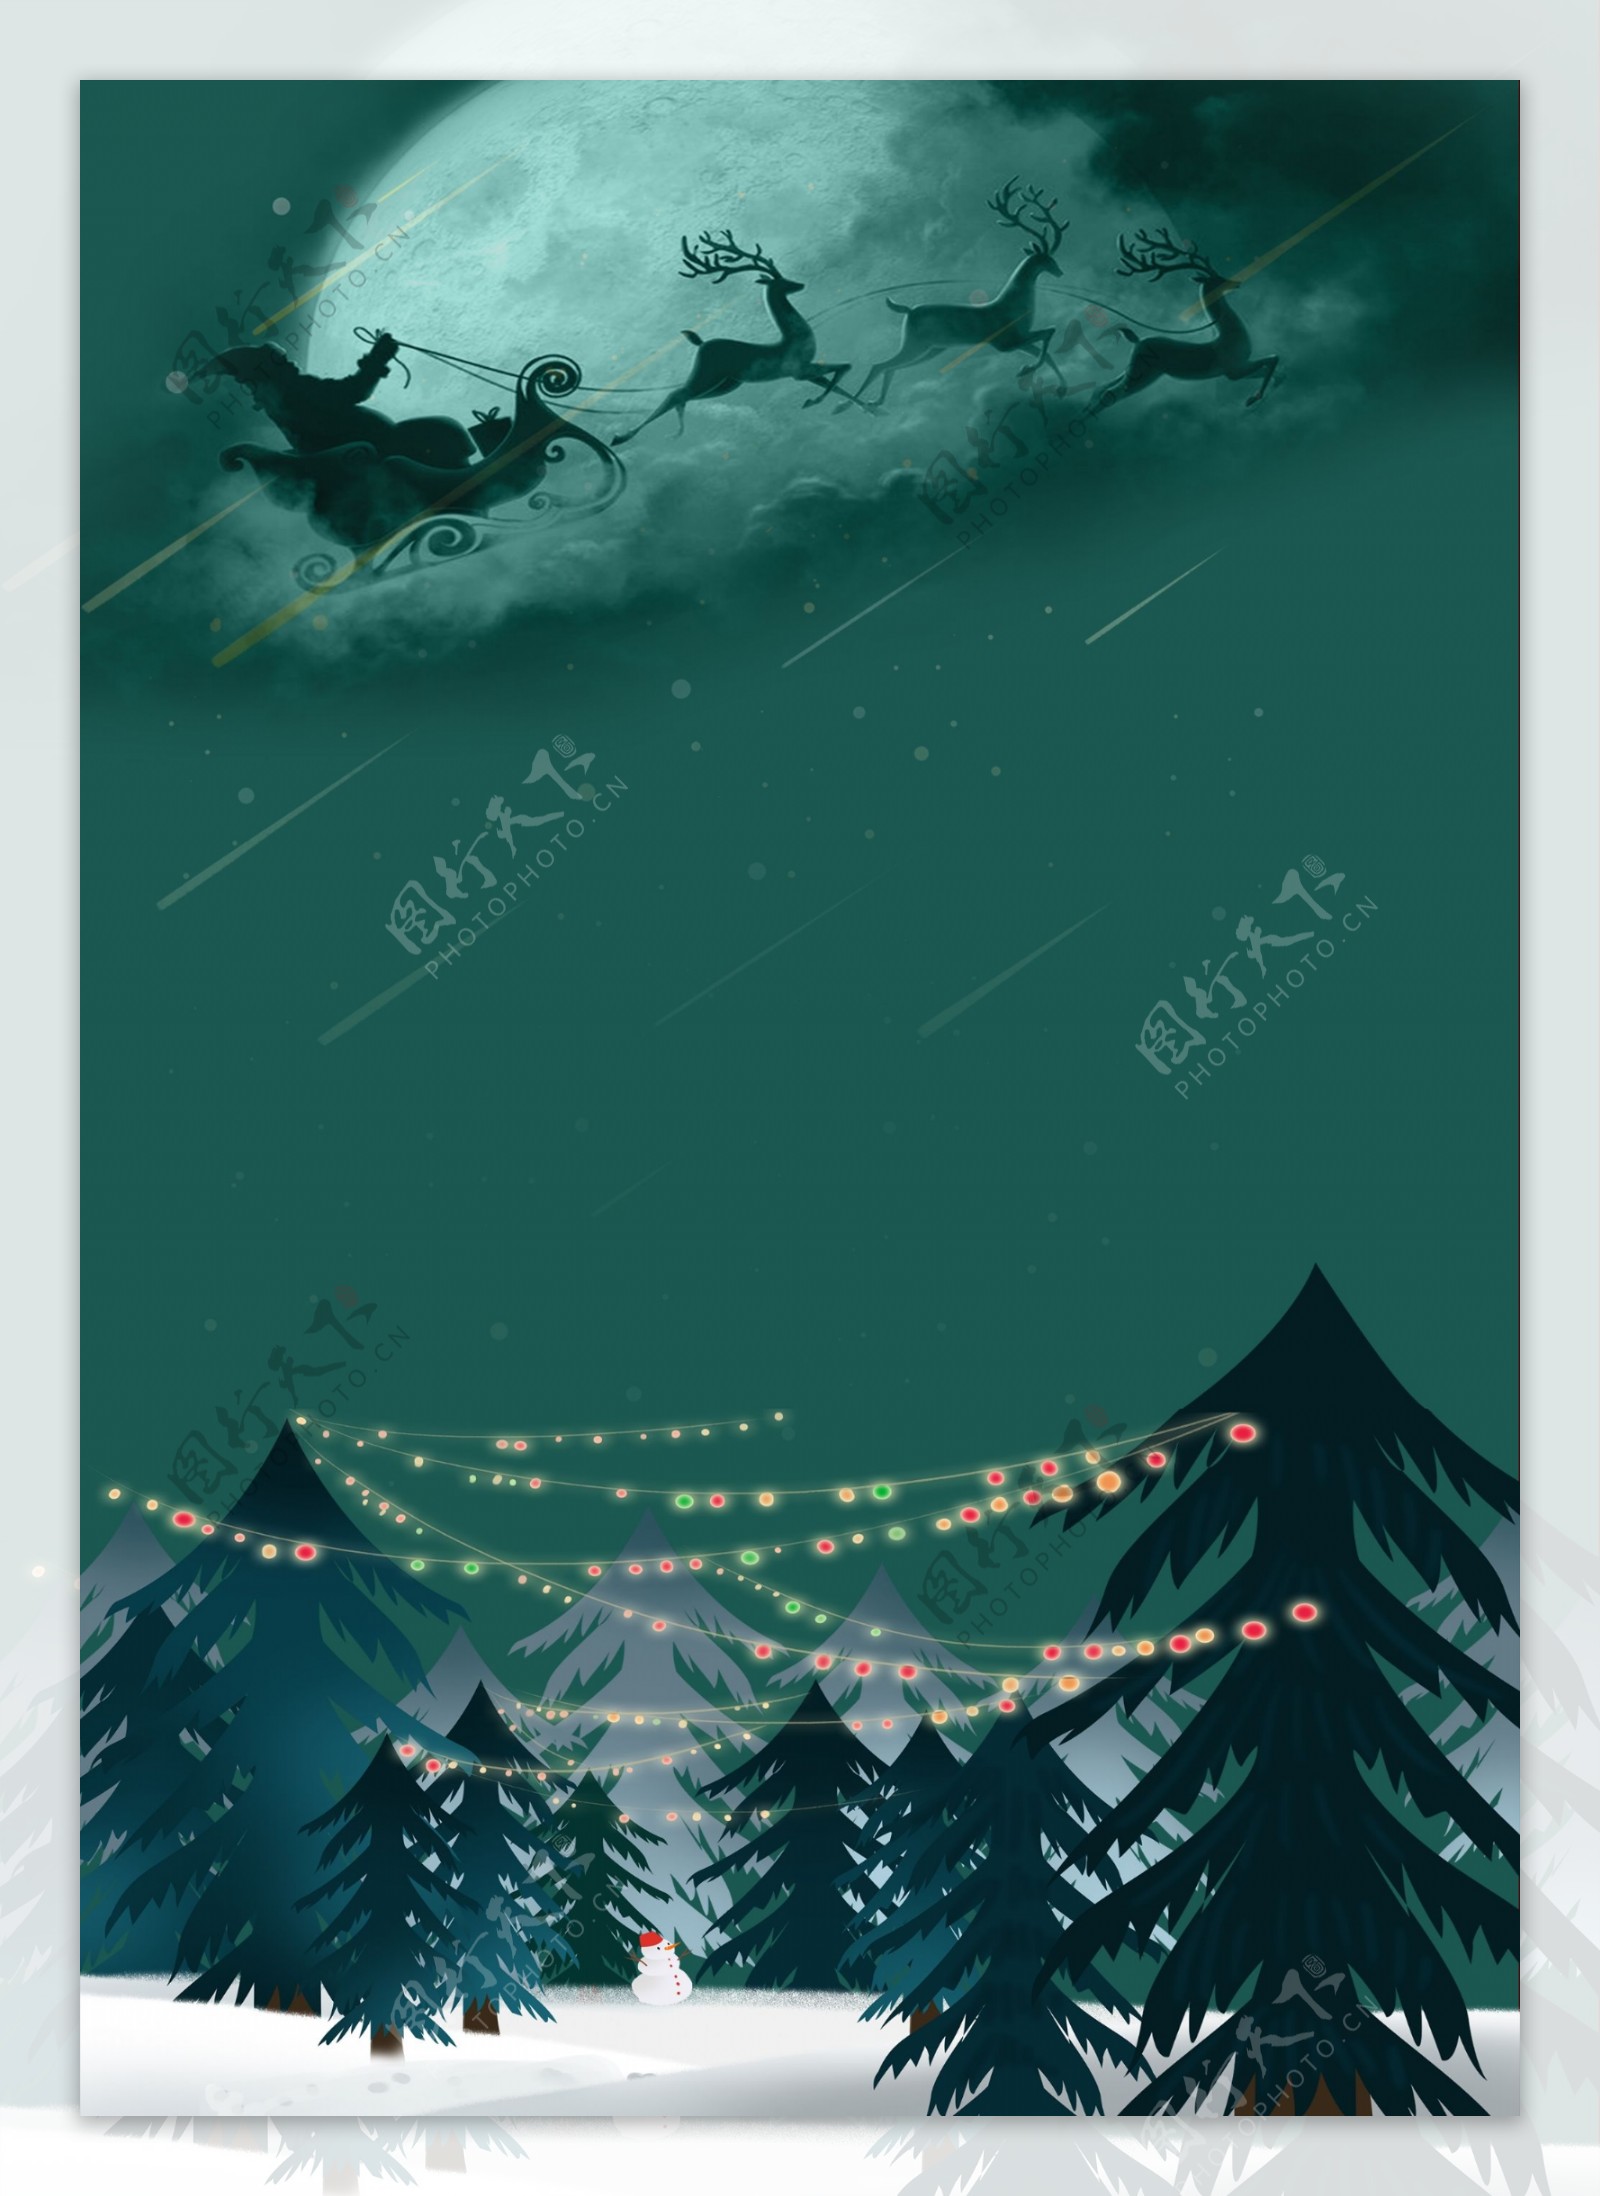 简约圣诞树林平安夜背景设计